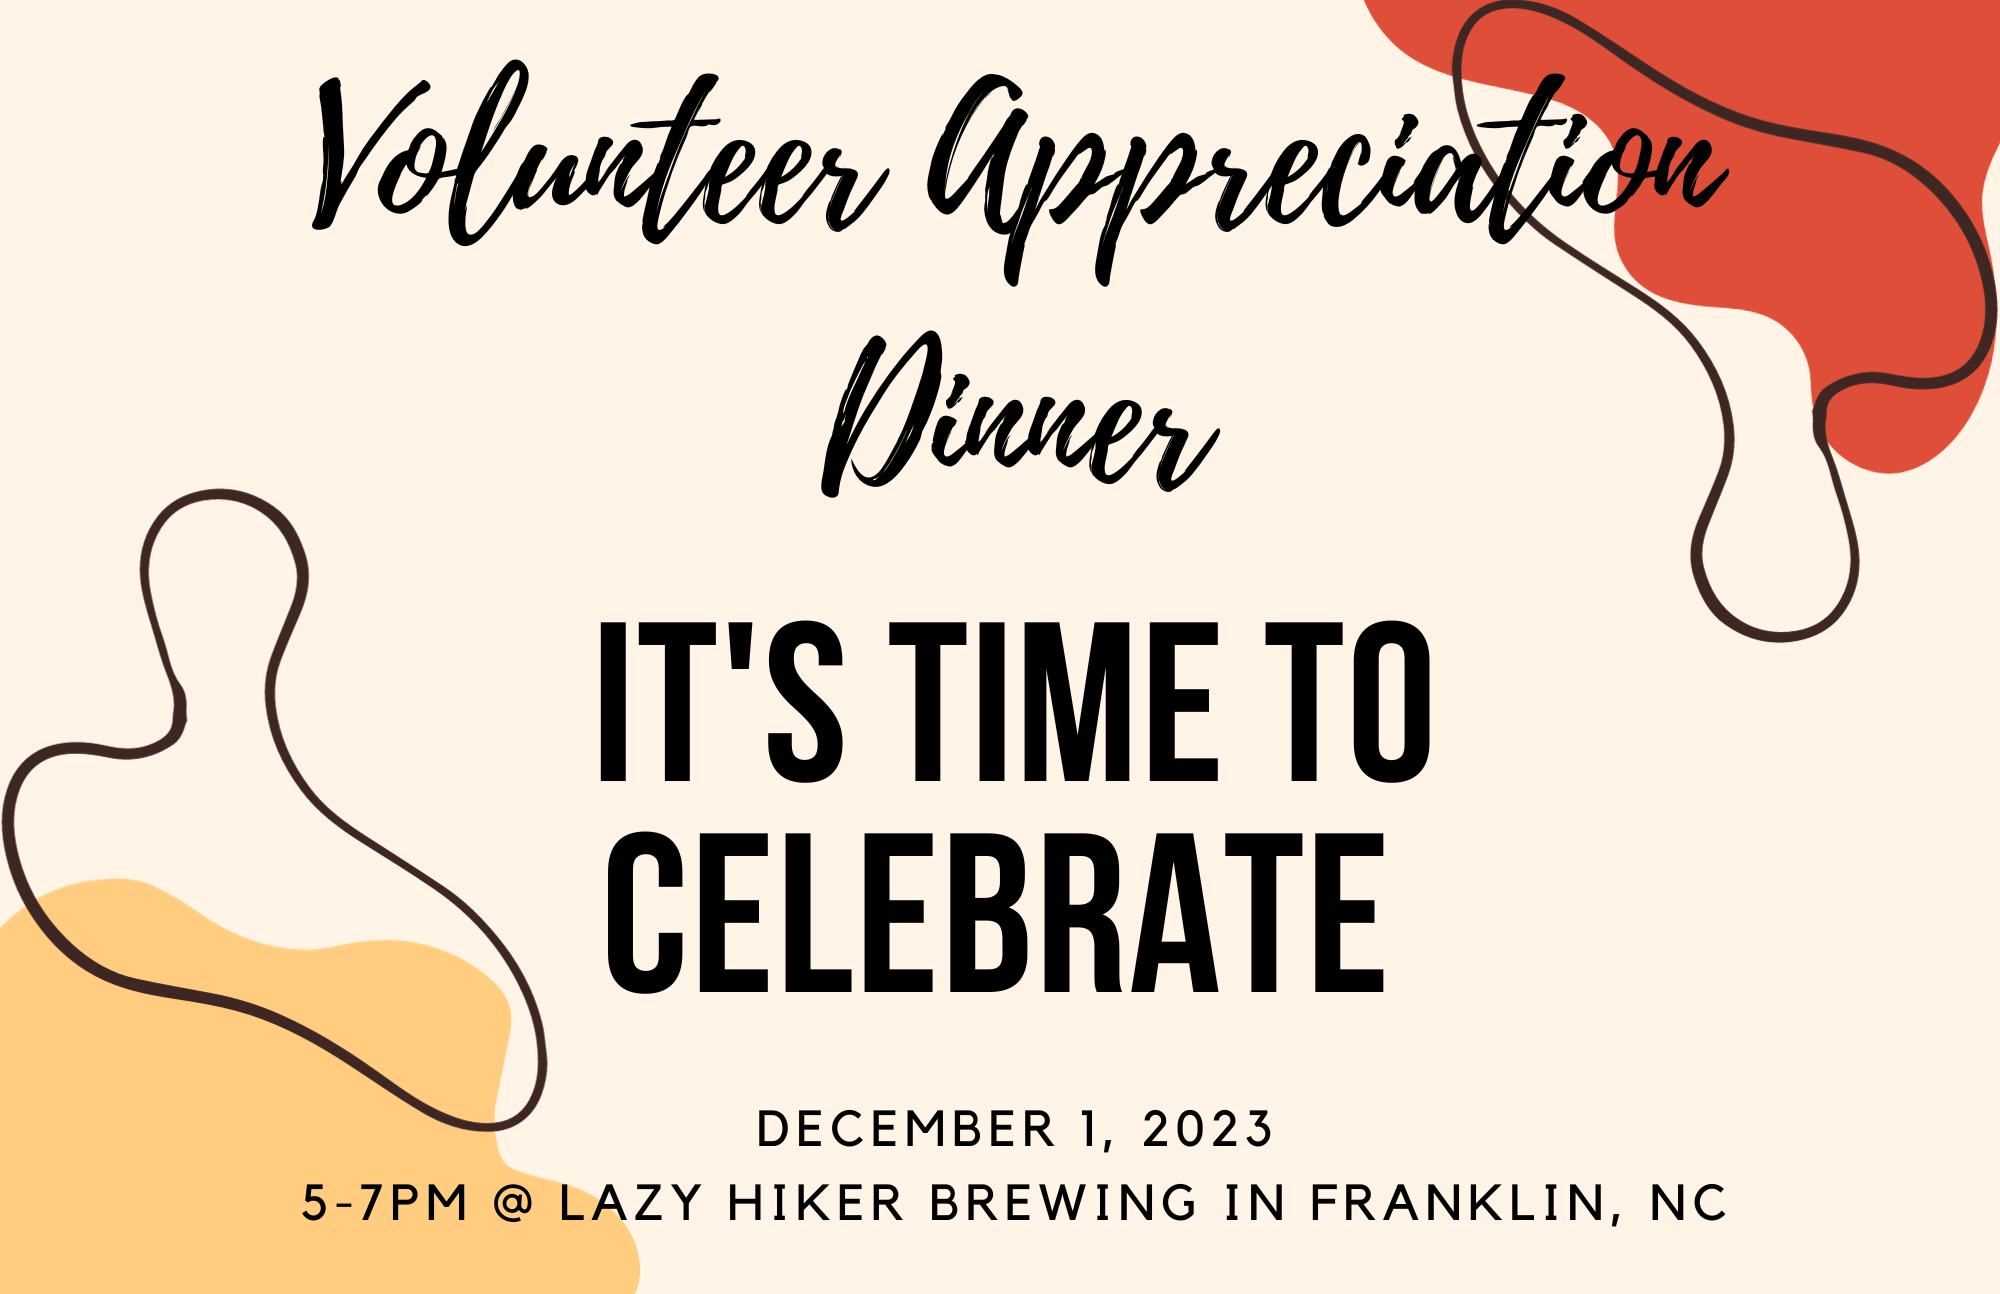 Volunteer Appreciation Dinner Flyer at Lazy Hiker on December 1 5-7